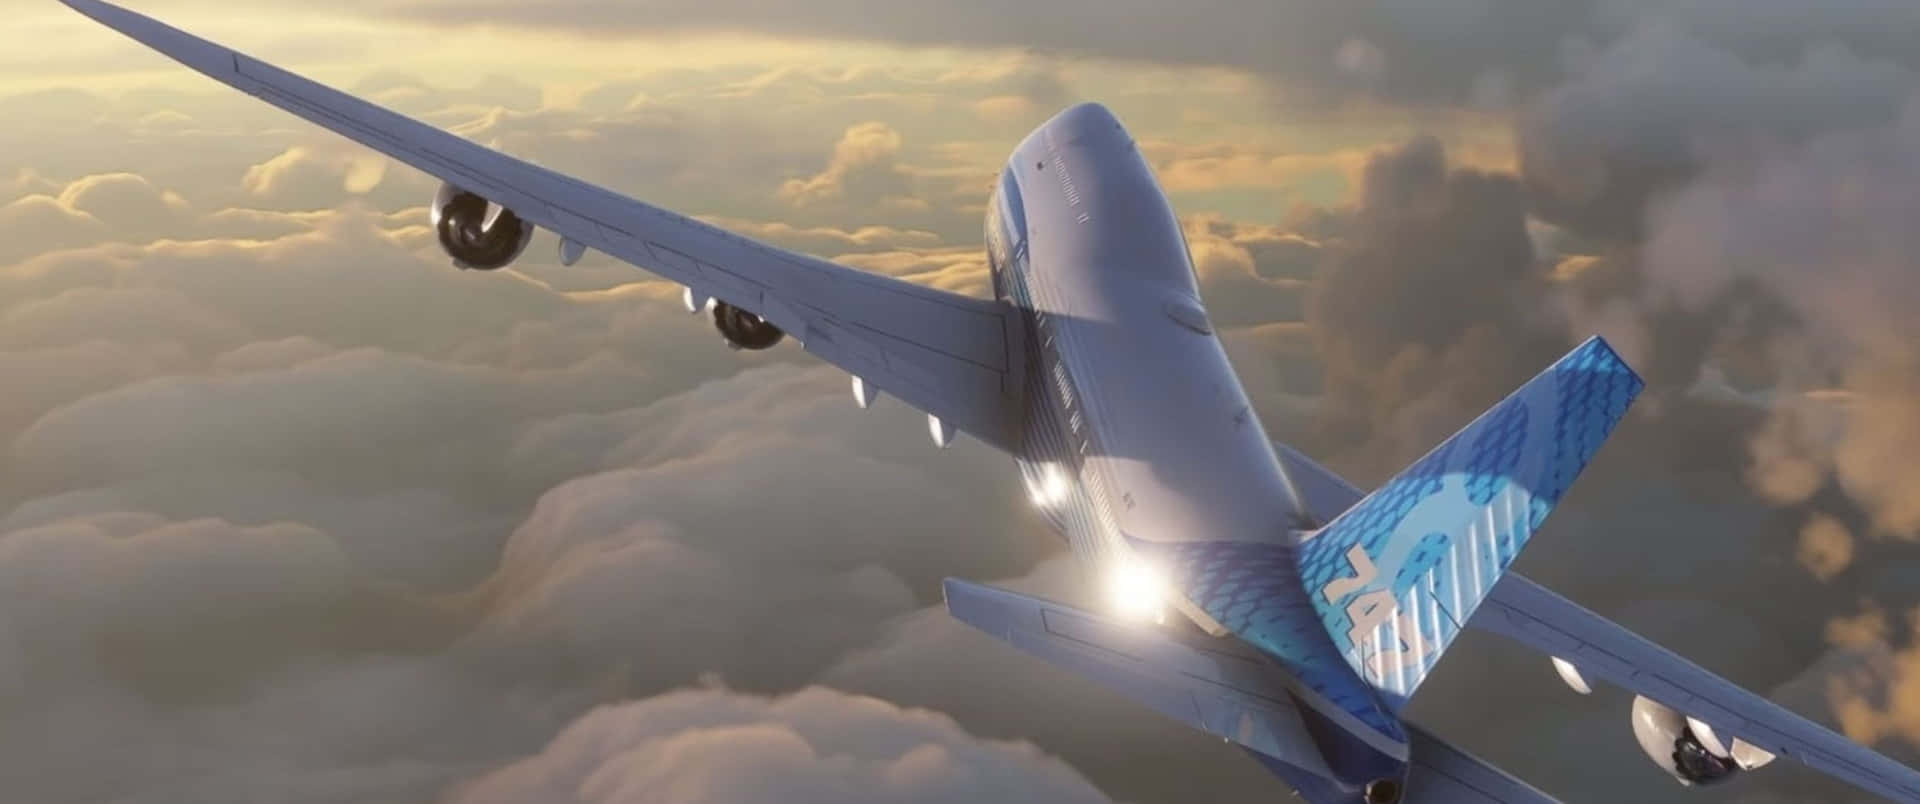 Vuelapor Los Cielos Con Microsoft Flight Simulator